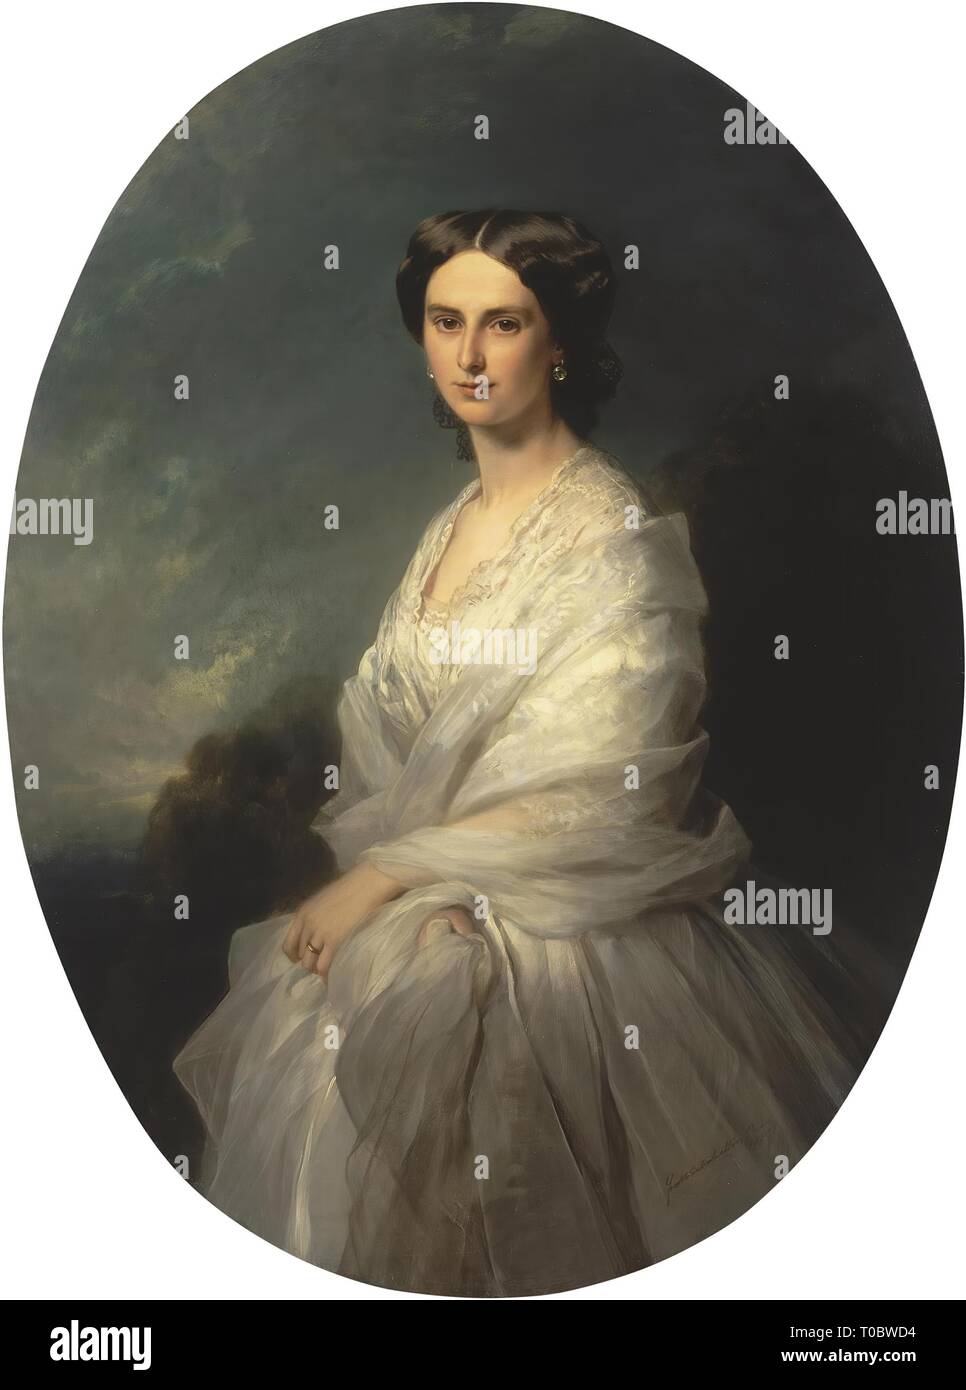 'Portrait de la Comtesse Sophia Bobrinskaya'. France, 1857. Dimensions : 129x97 cm. Musée : Etat de l'Ermitage, Saint-Pétersbourg. Auteur : Franz Xaver Winterhalter. Banque D'Images